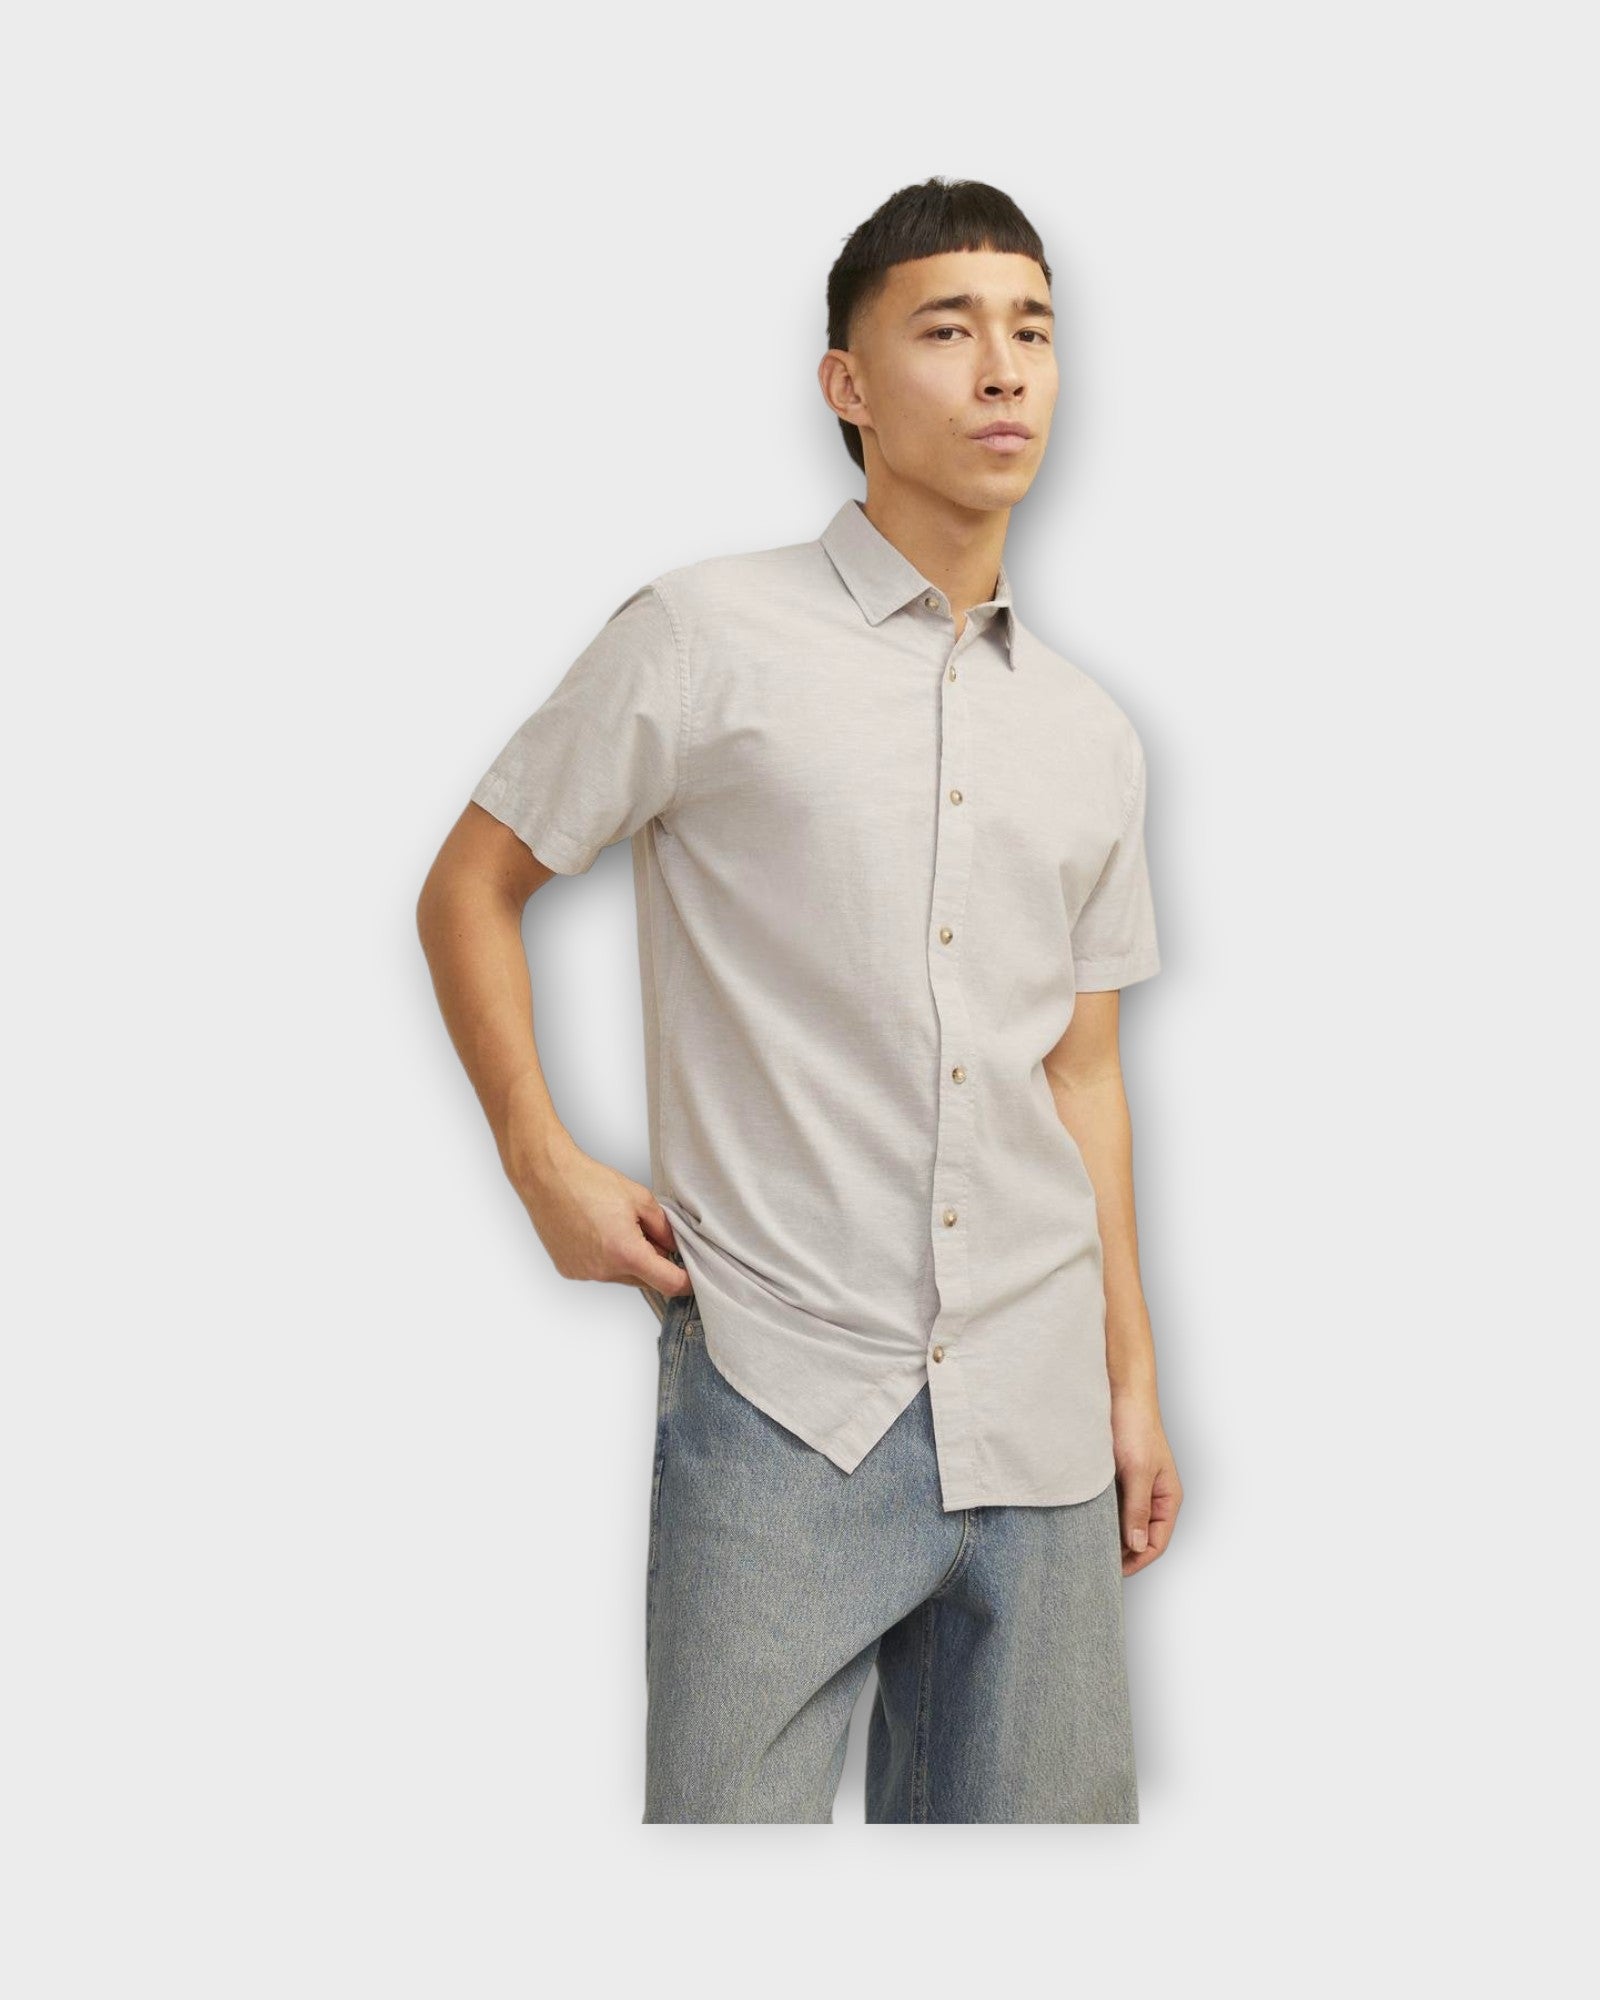 Summer Linen Shirt Crockery fra Jack and Jones. Kortærmet sandfarvet hørskjorte til mænd. Her set på model i closeup.